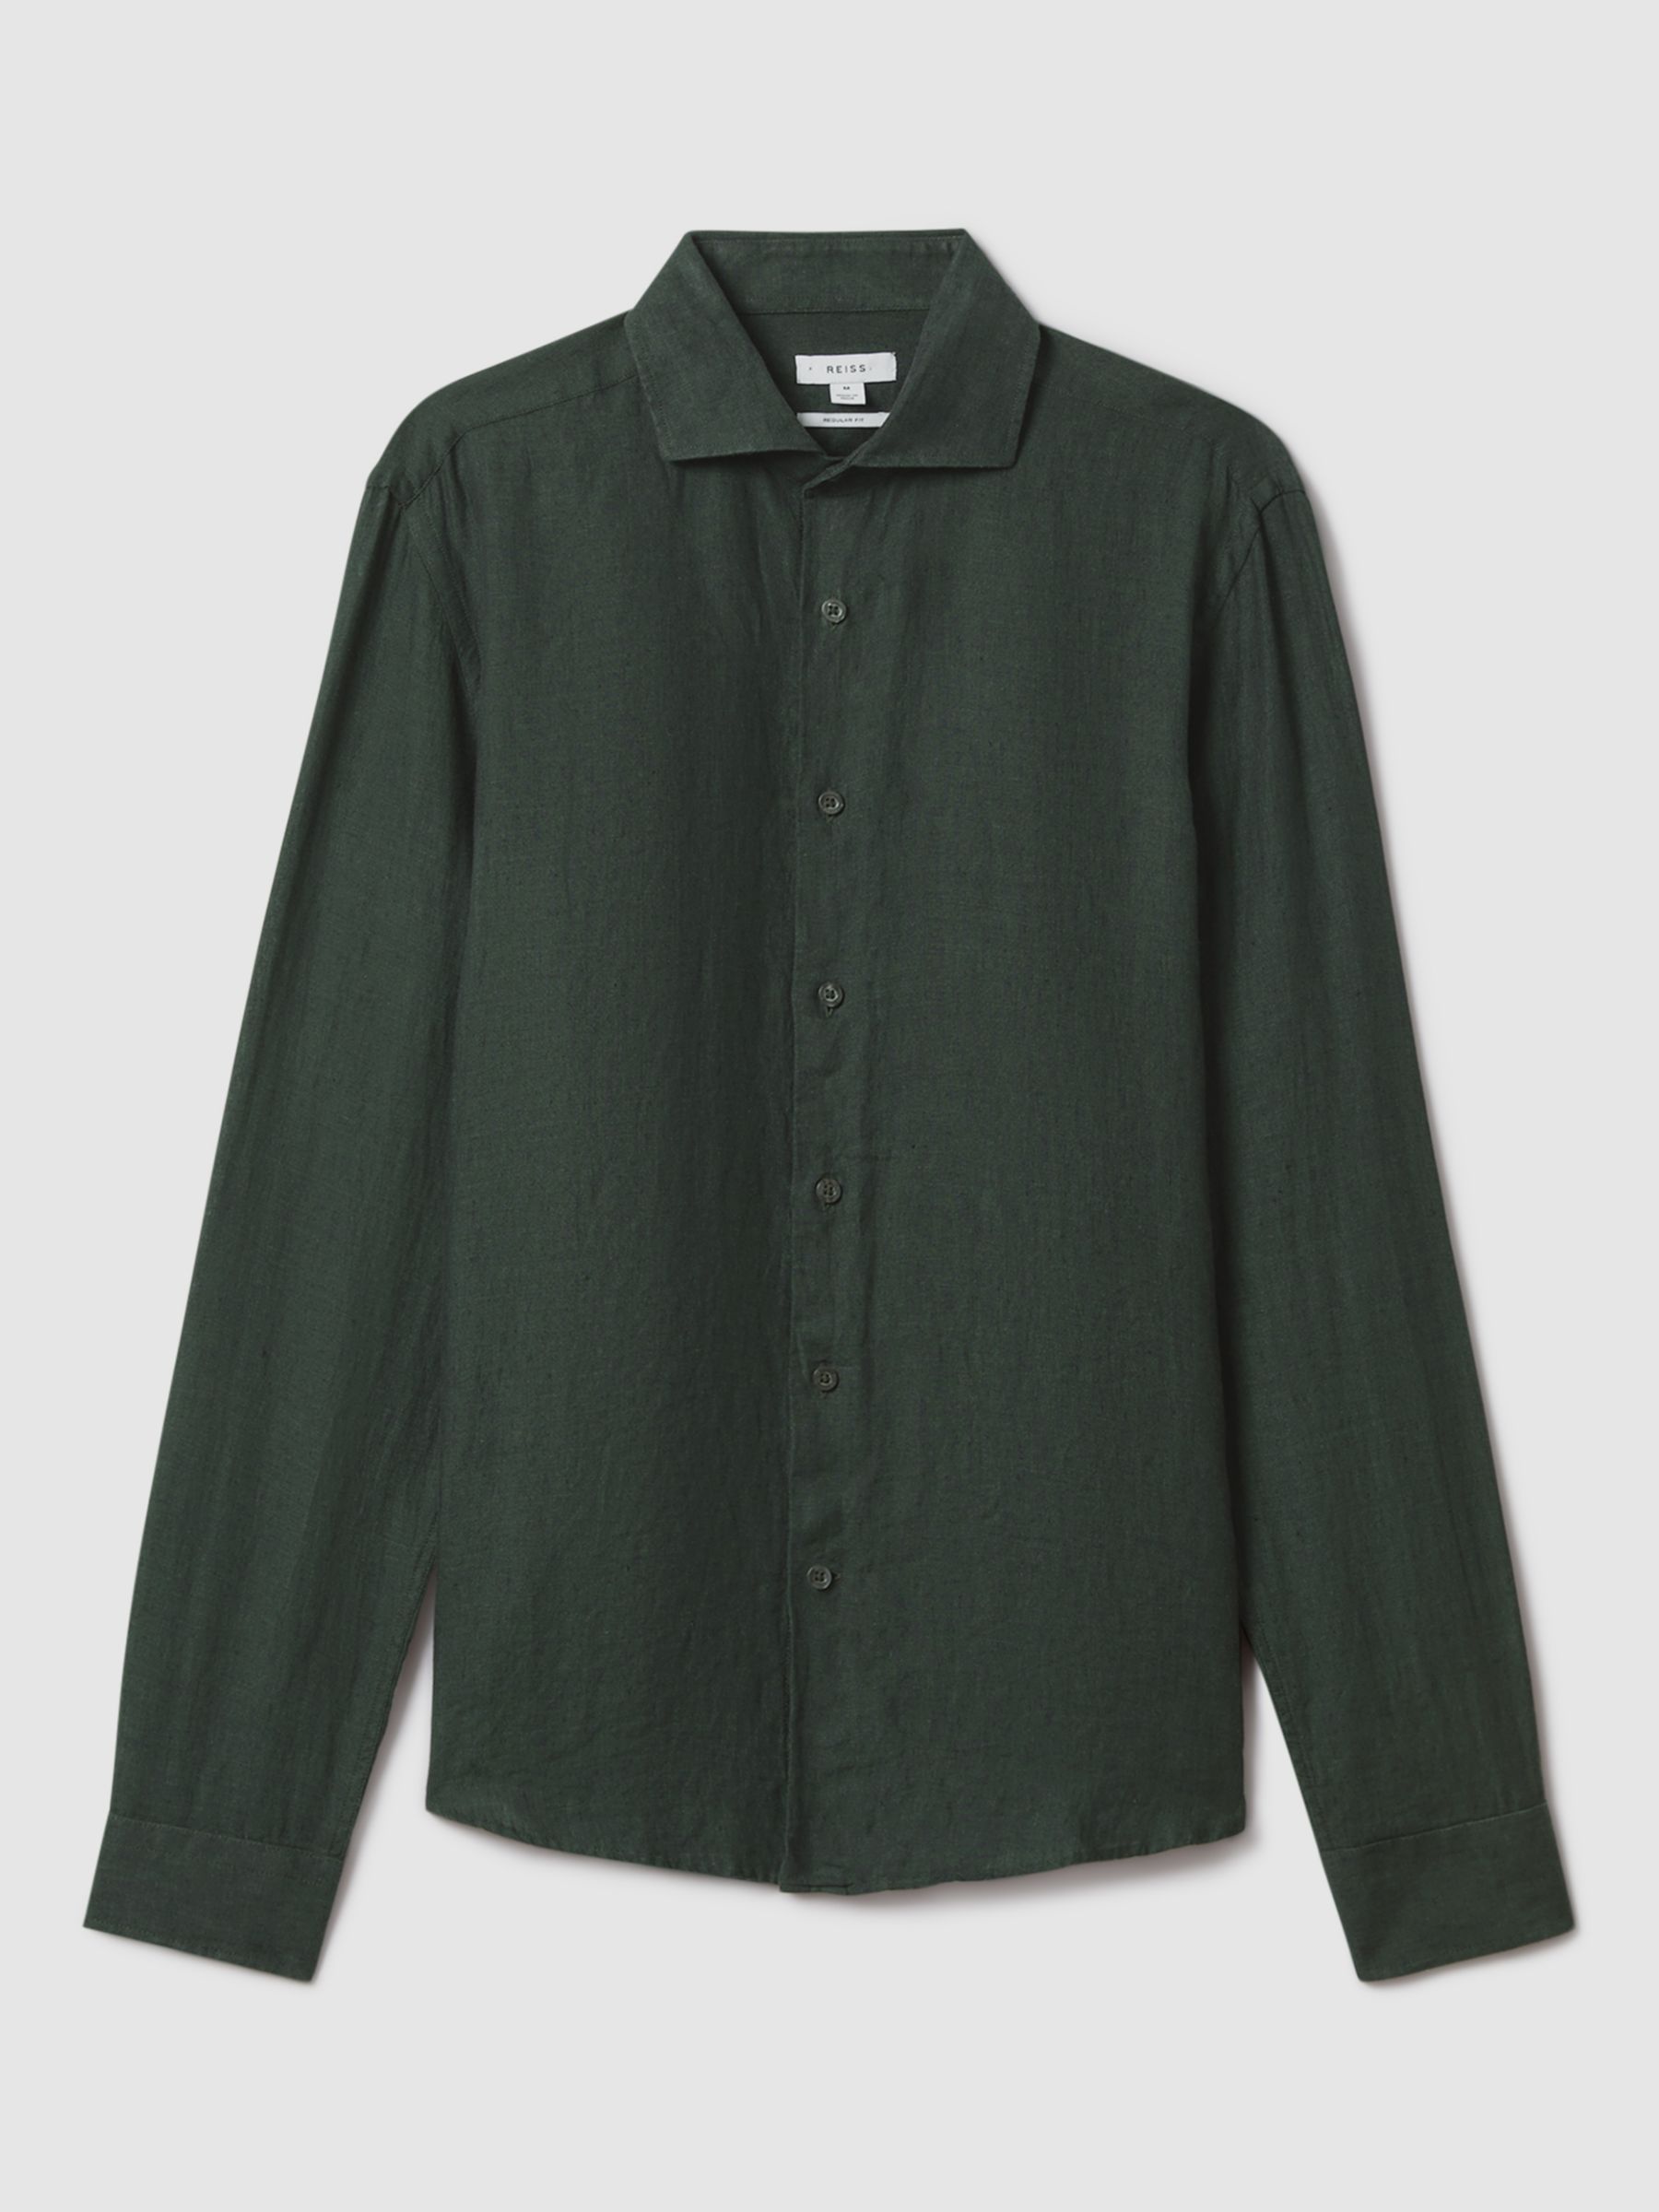 Reiss Ruban Regular Fit Linen Shirt, Dark Green, XS